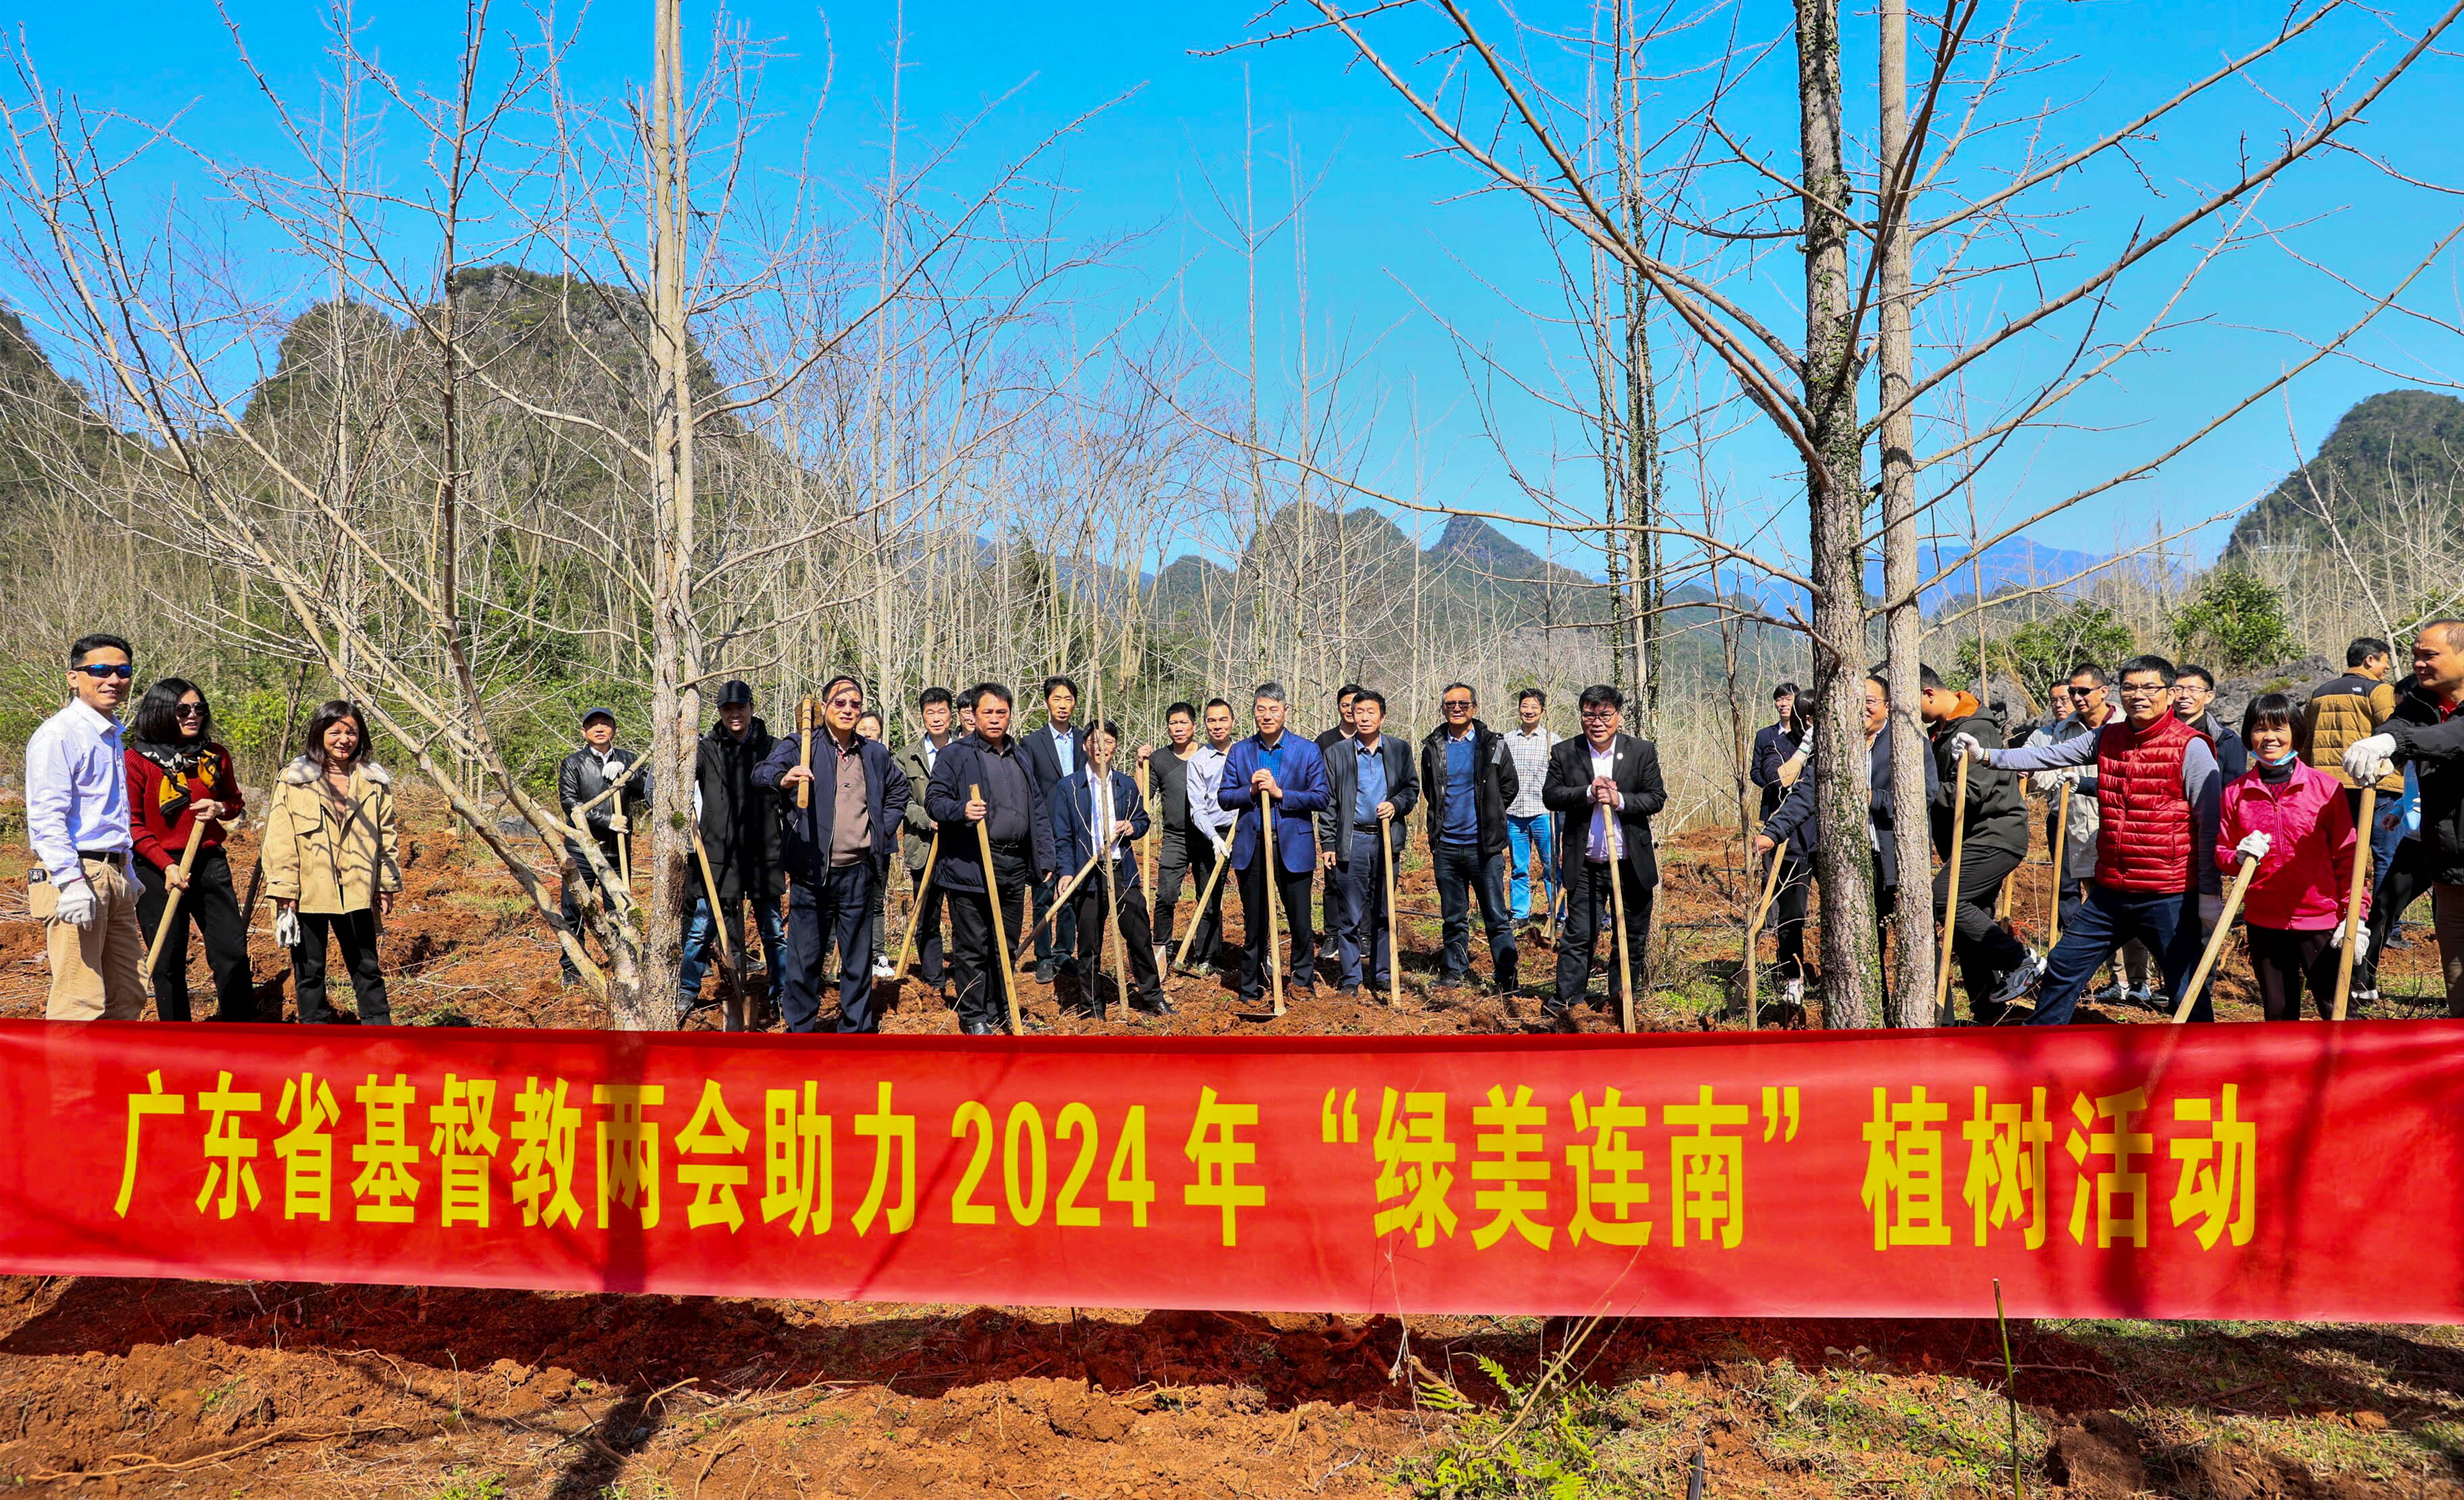 广东省基督教两会赴连南开展植树及捐款活动助力绿美连南生态建设